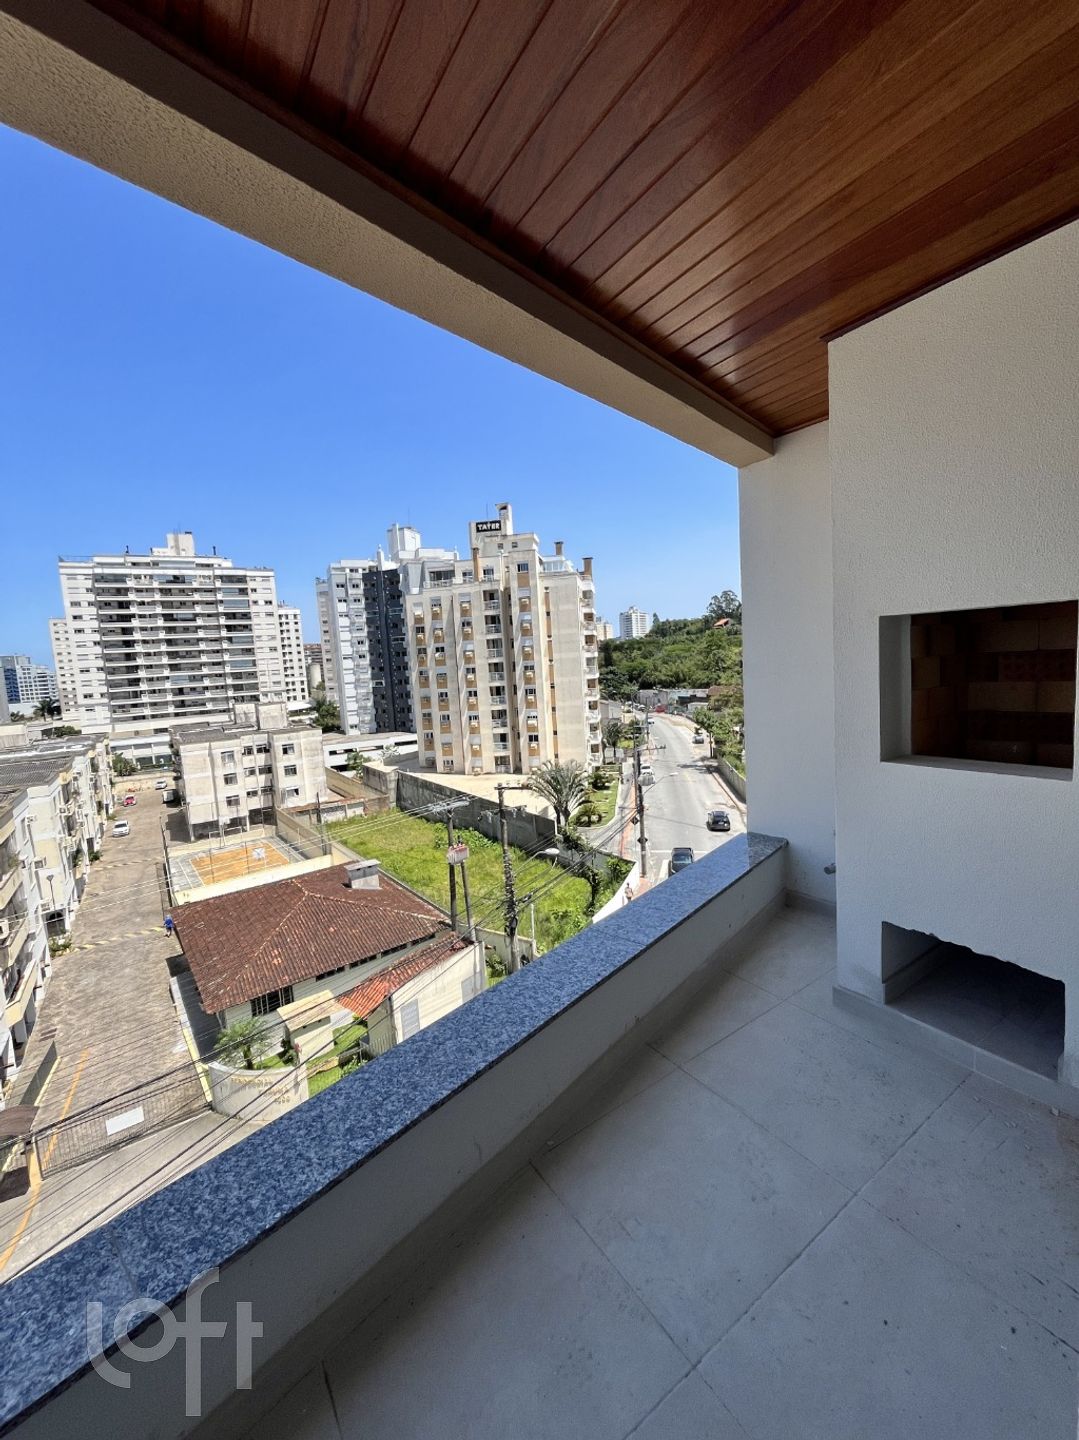 VENDA &#8211; Apartamento de 2 quartos no bairro Itacorubi, Florianópolis &#8211; PUu52rnt